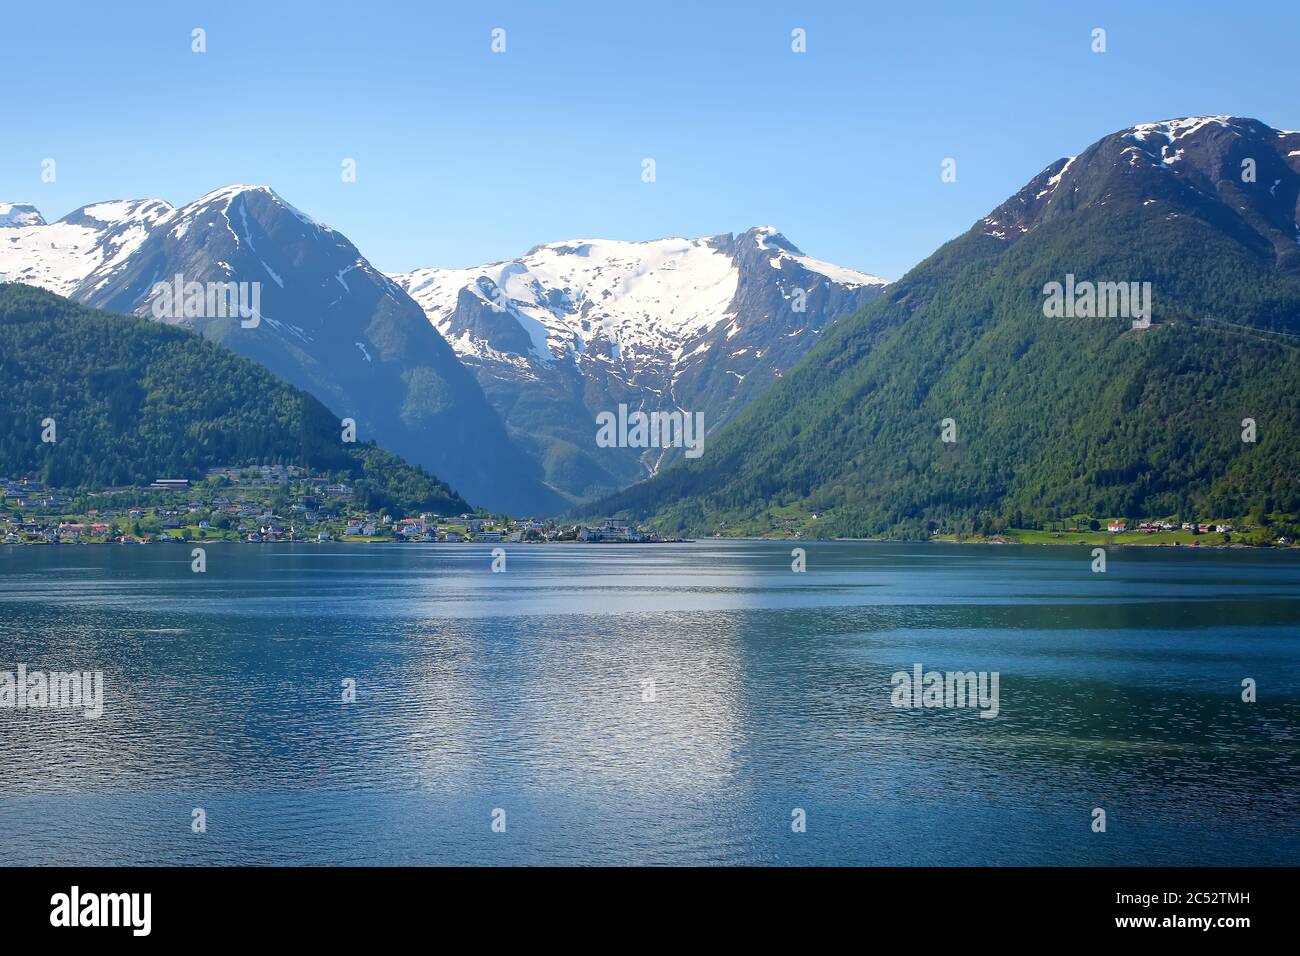 Magnifique paysage de fjord norvégien calme. Neige sur les montagnes et reflets dans l'eau de Sognefjord ou Sognefjorden, comté de Vestland, Norvège. Banque D'Images